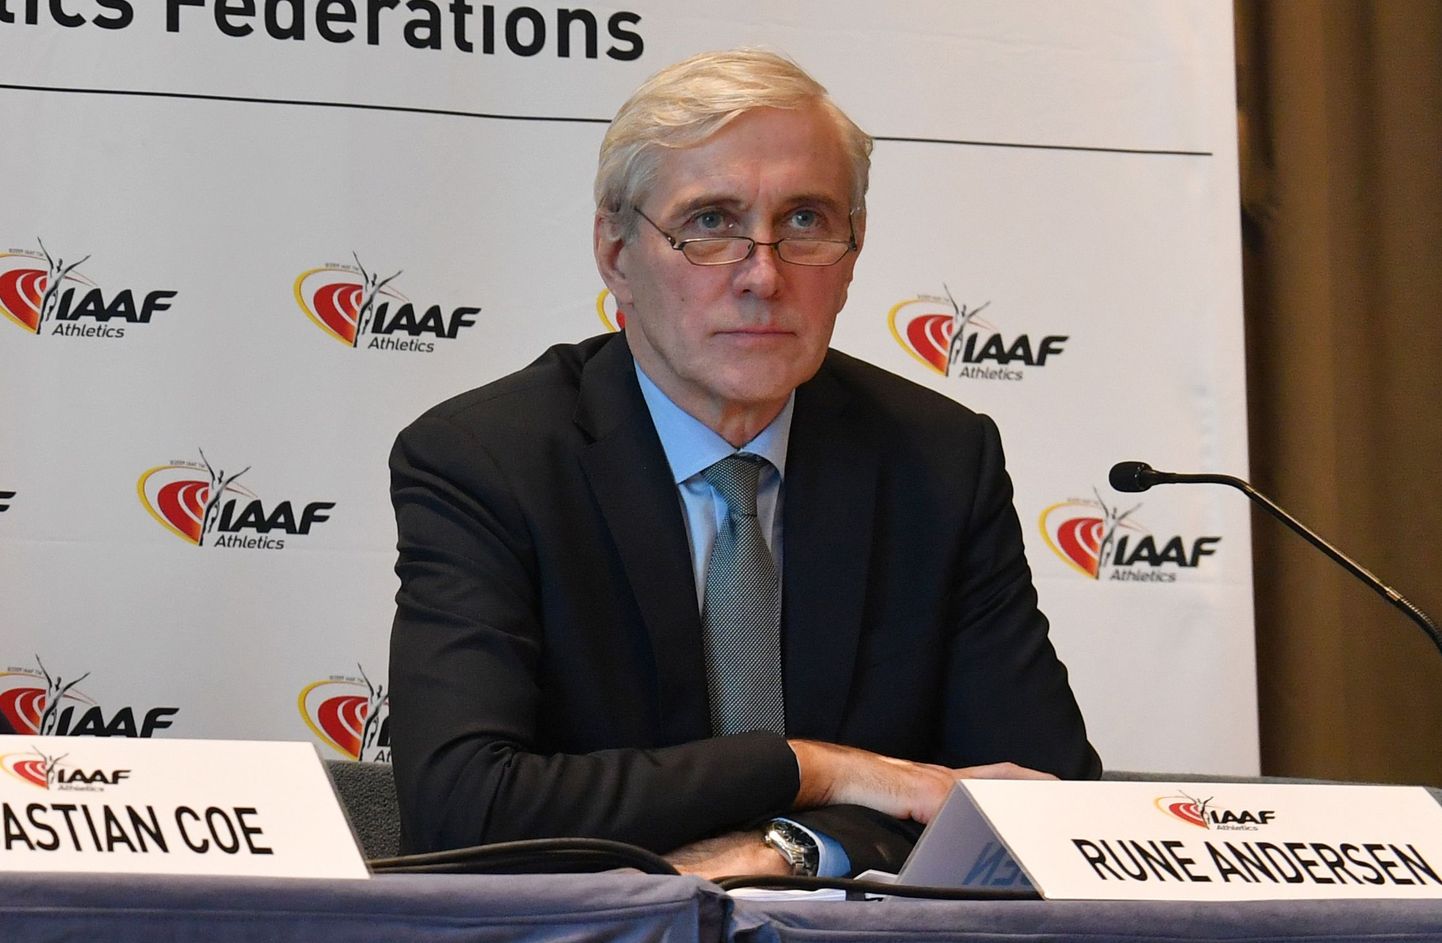 Представитель Международной ассоциации легкоатлетических федераций  Руне Андерсен